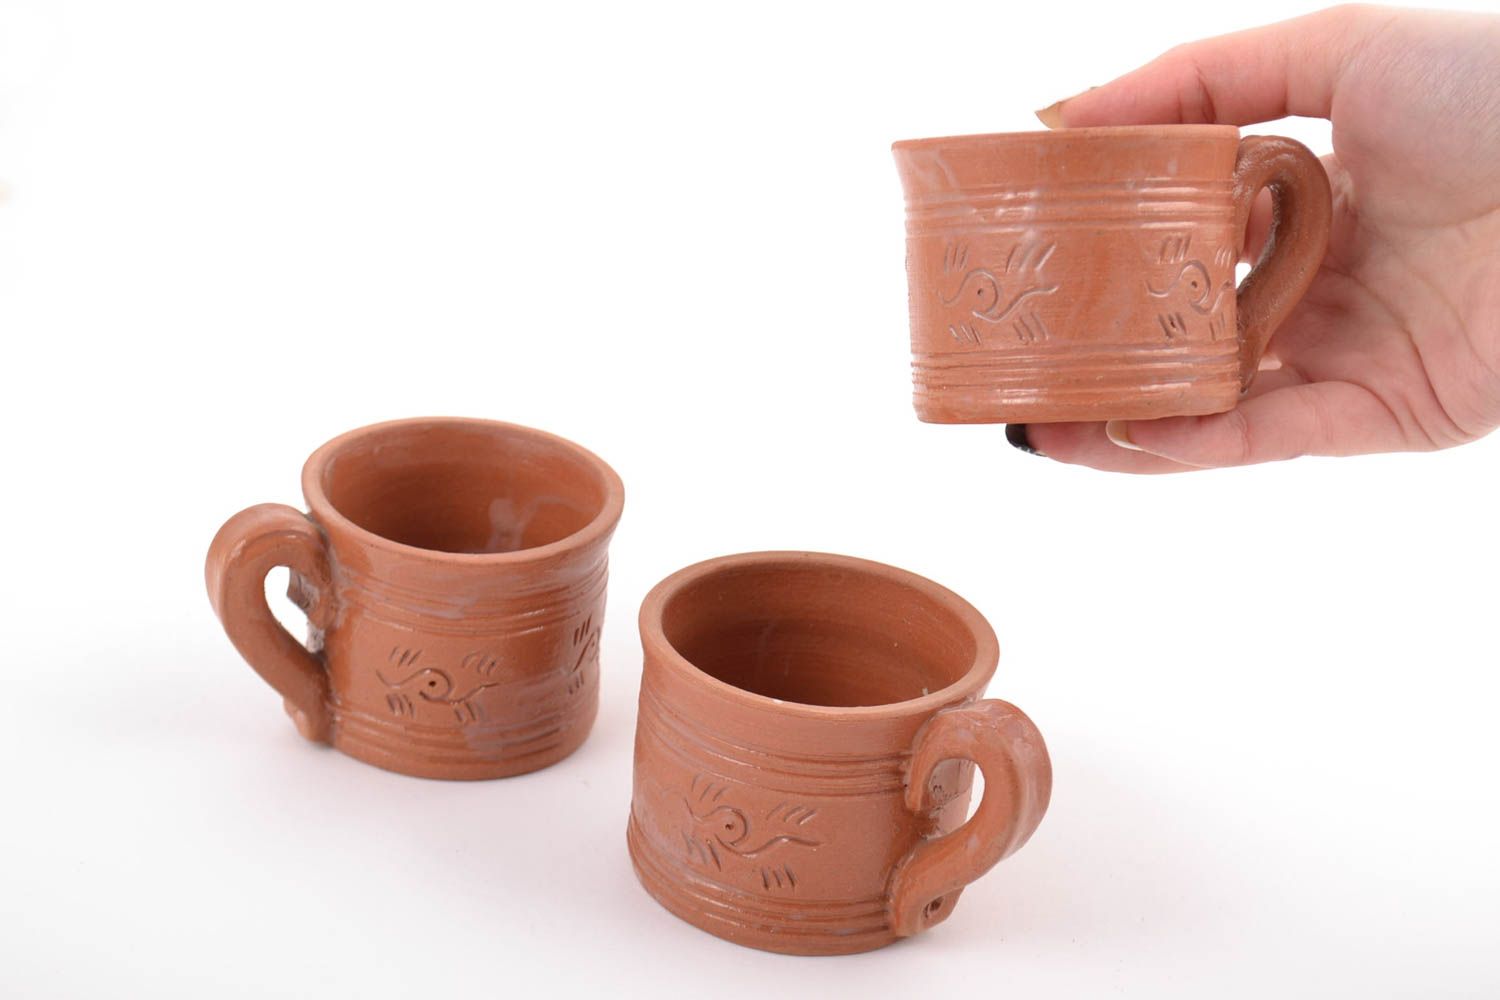 Глиняные чашки для кофе набор 3 шт 75 мл молочная керамика ручной работы фото 2